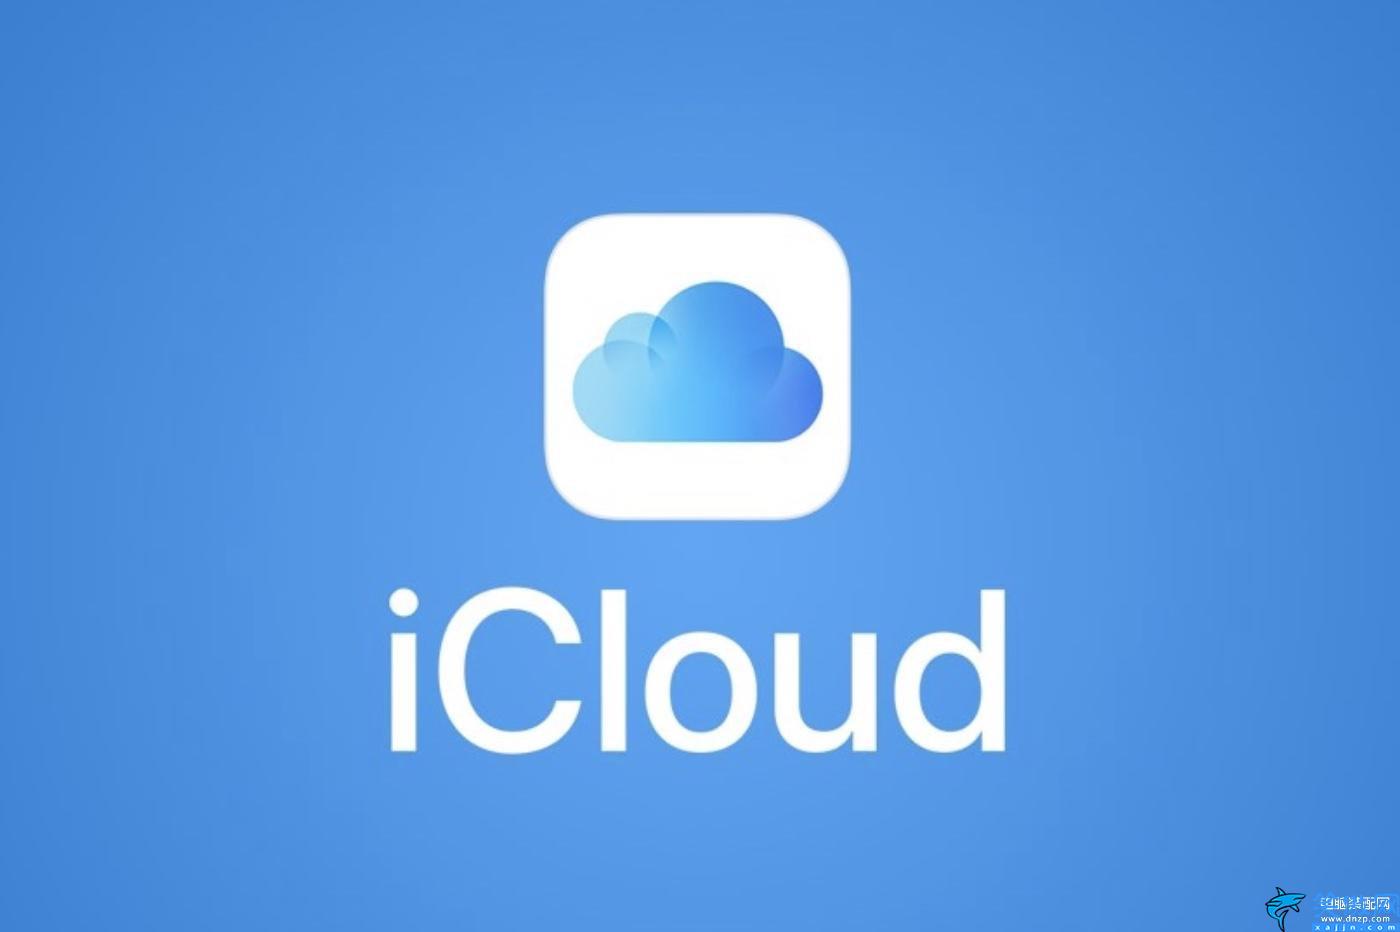 手机怎么进入icloud的相册,访问iCloud共享照片步骤